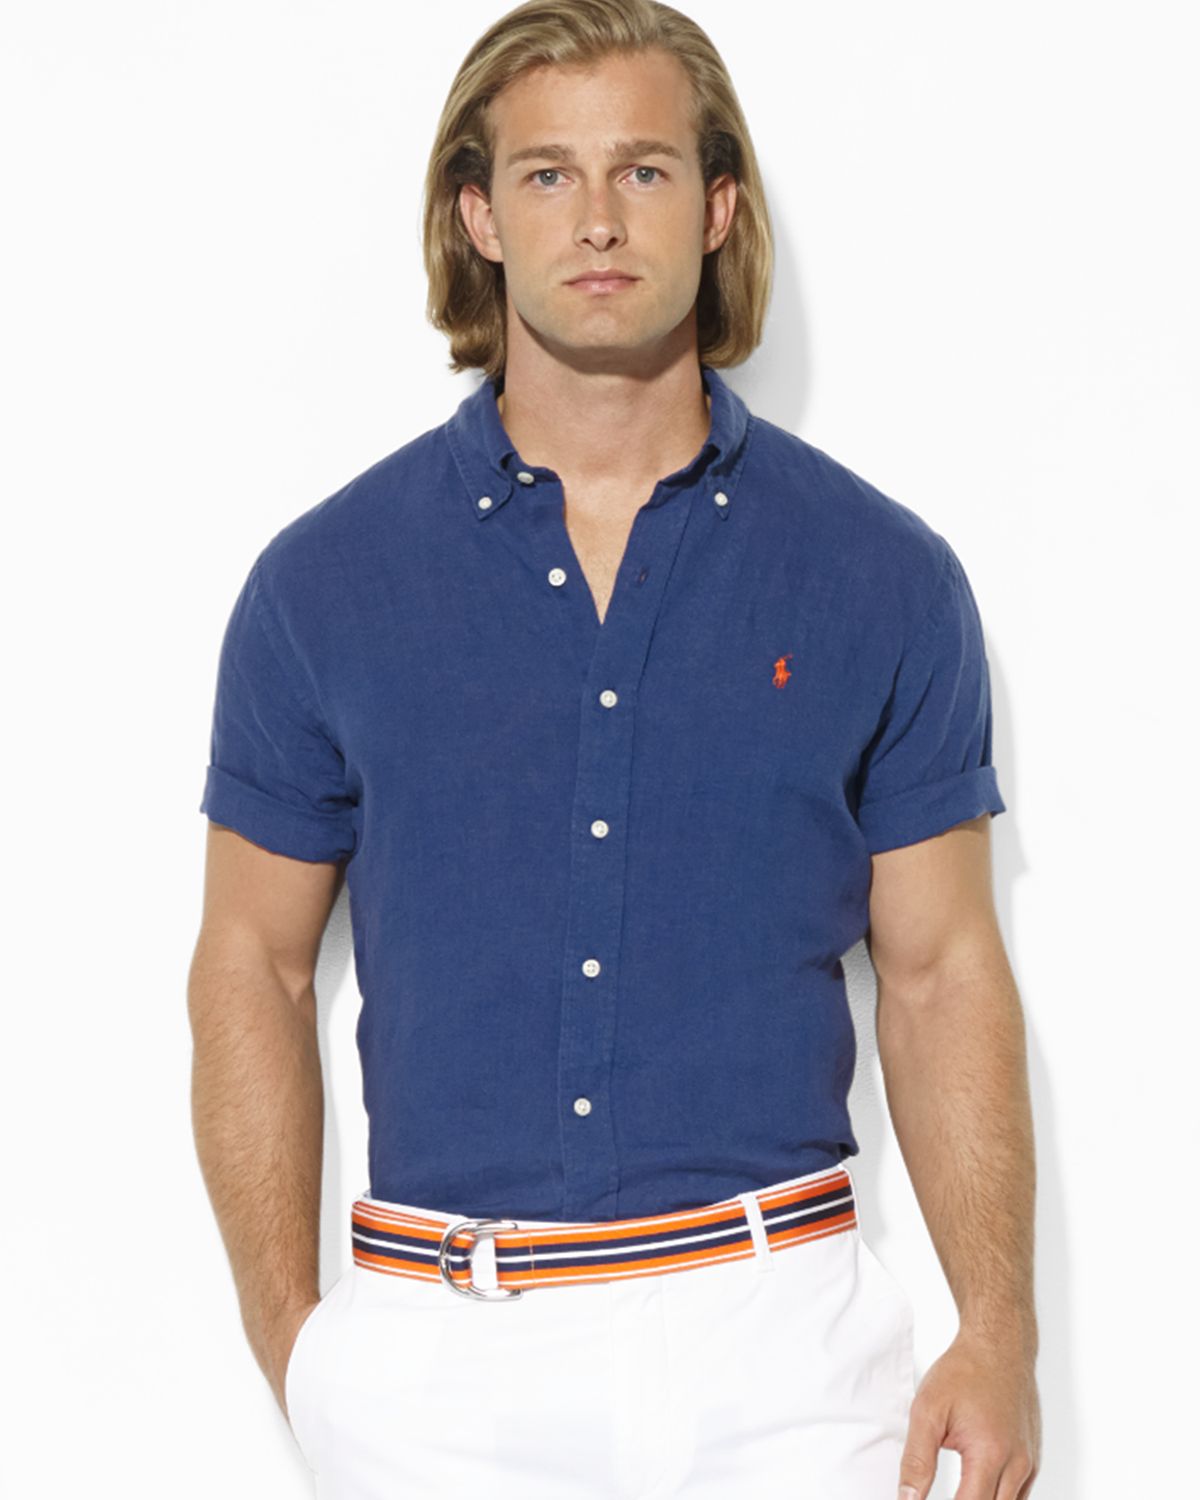 Men's $98. (M) POLO-RALPH LAUREN Navy Linen Shirt (Short Sleeve) | eBay